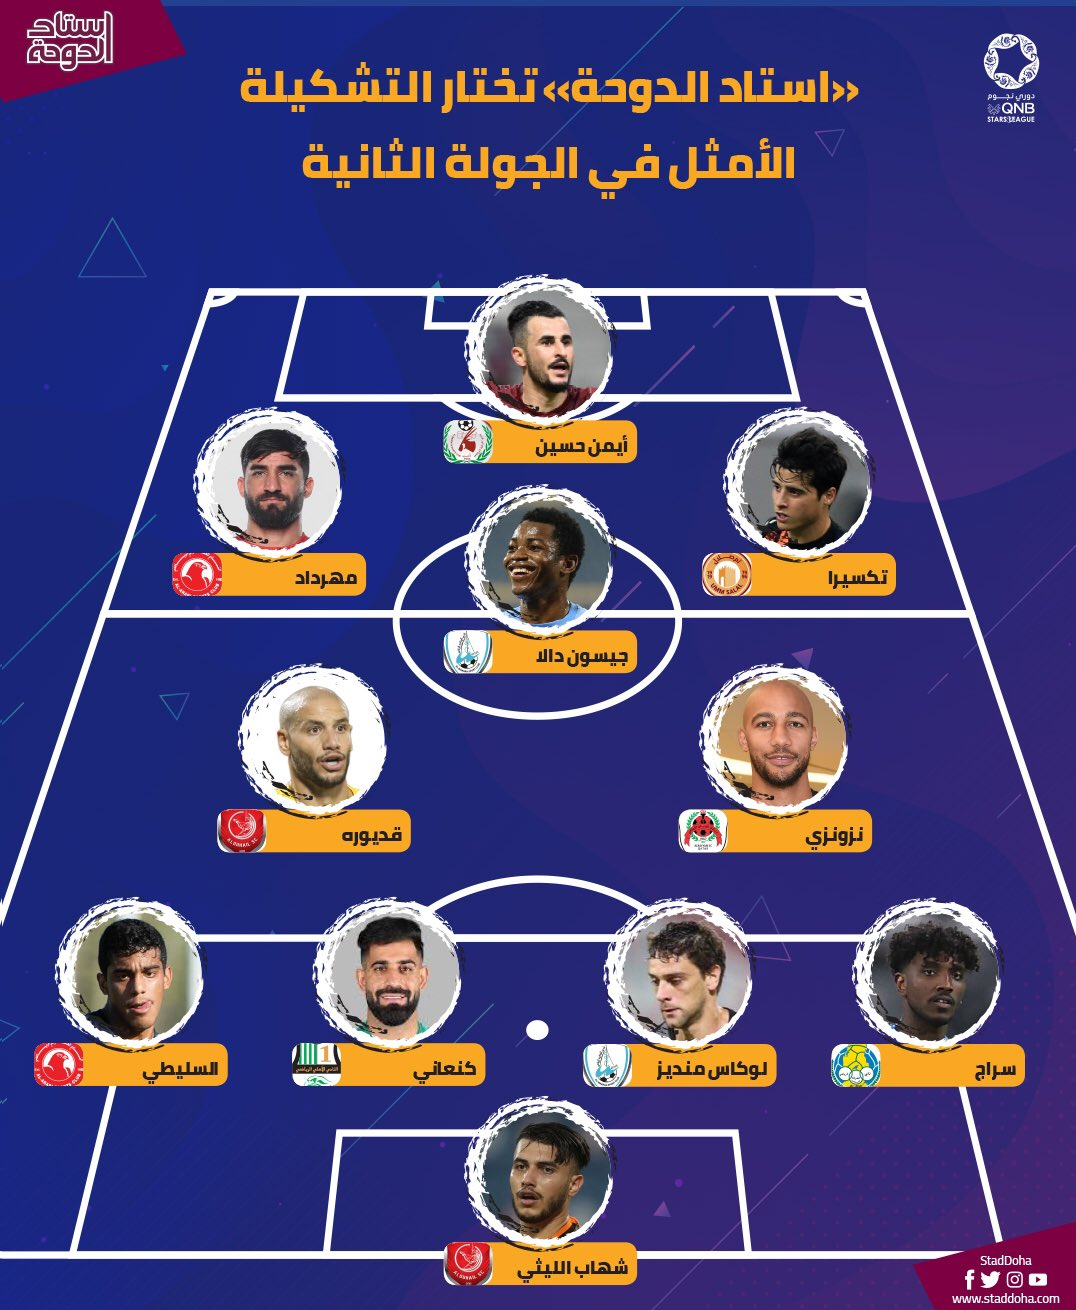 2 ایرانی در تیم منتخب لیگ ستارگان